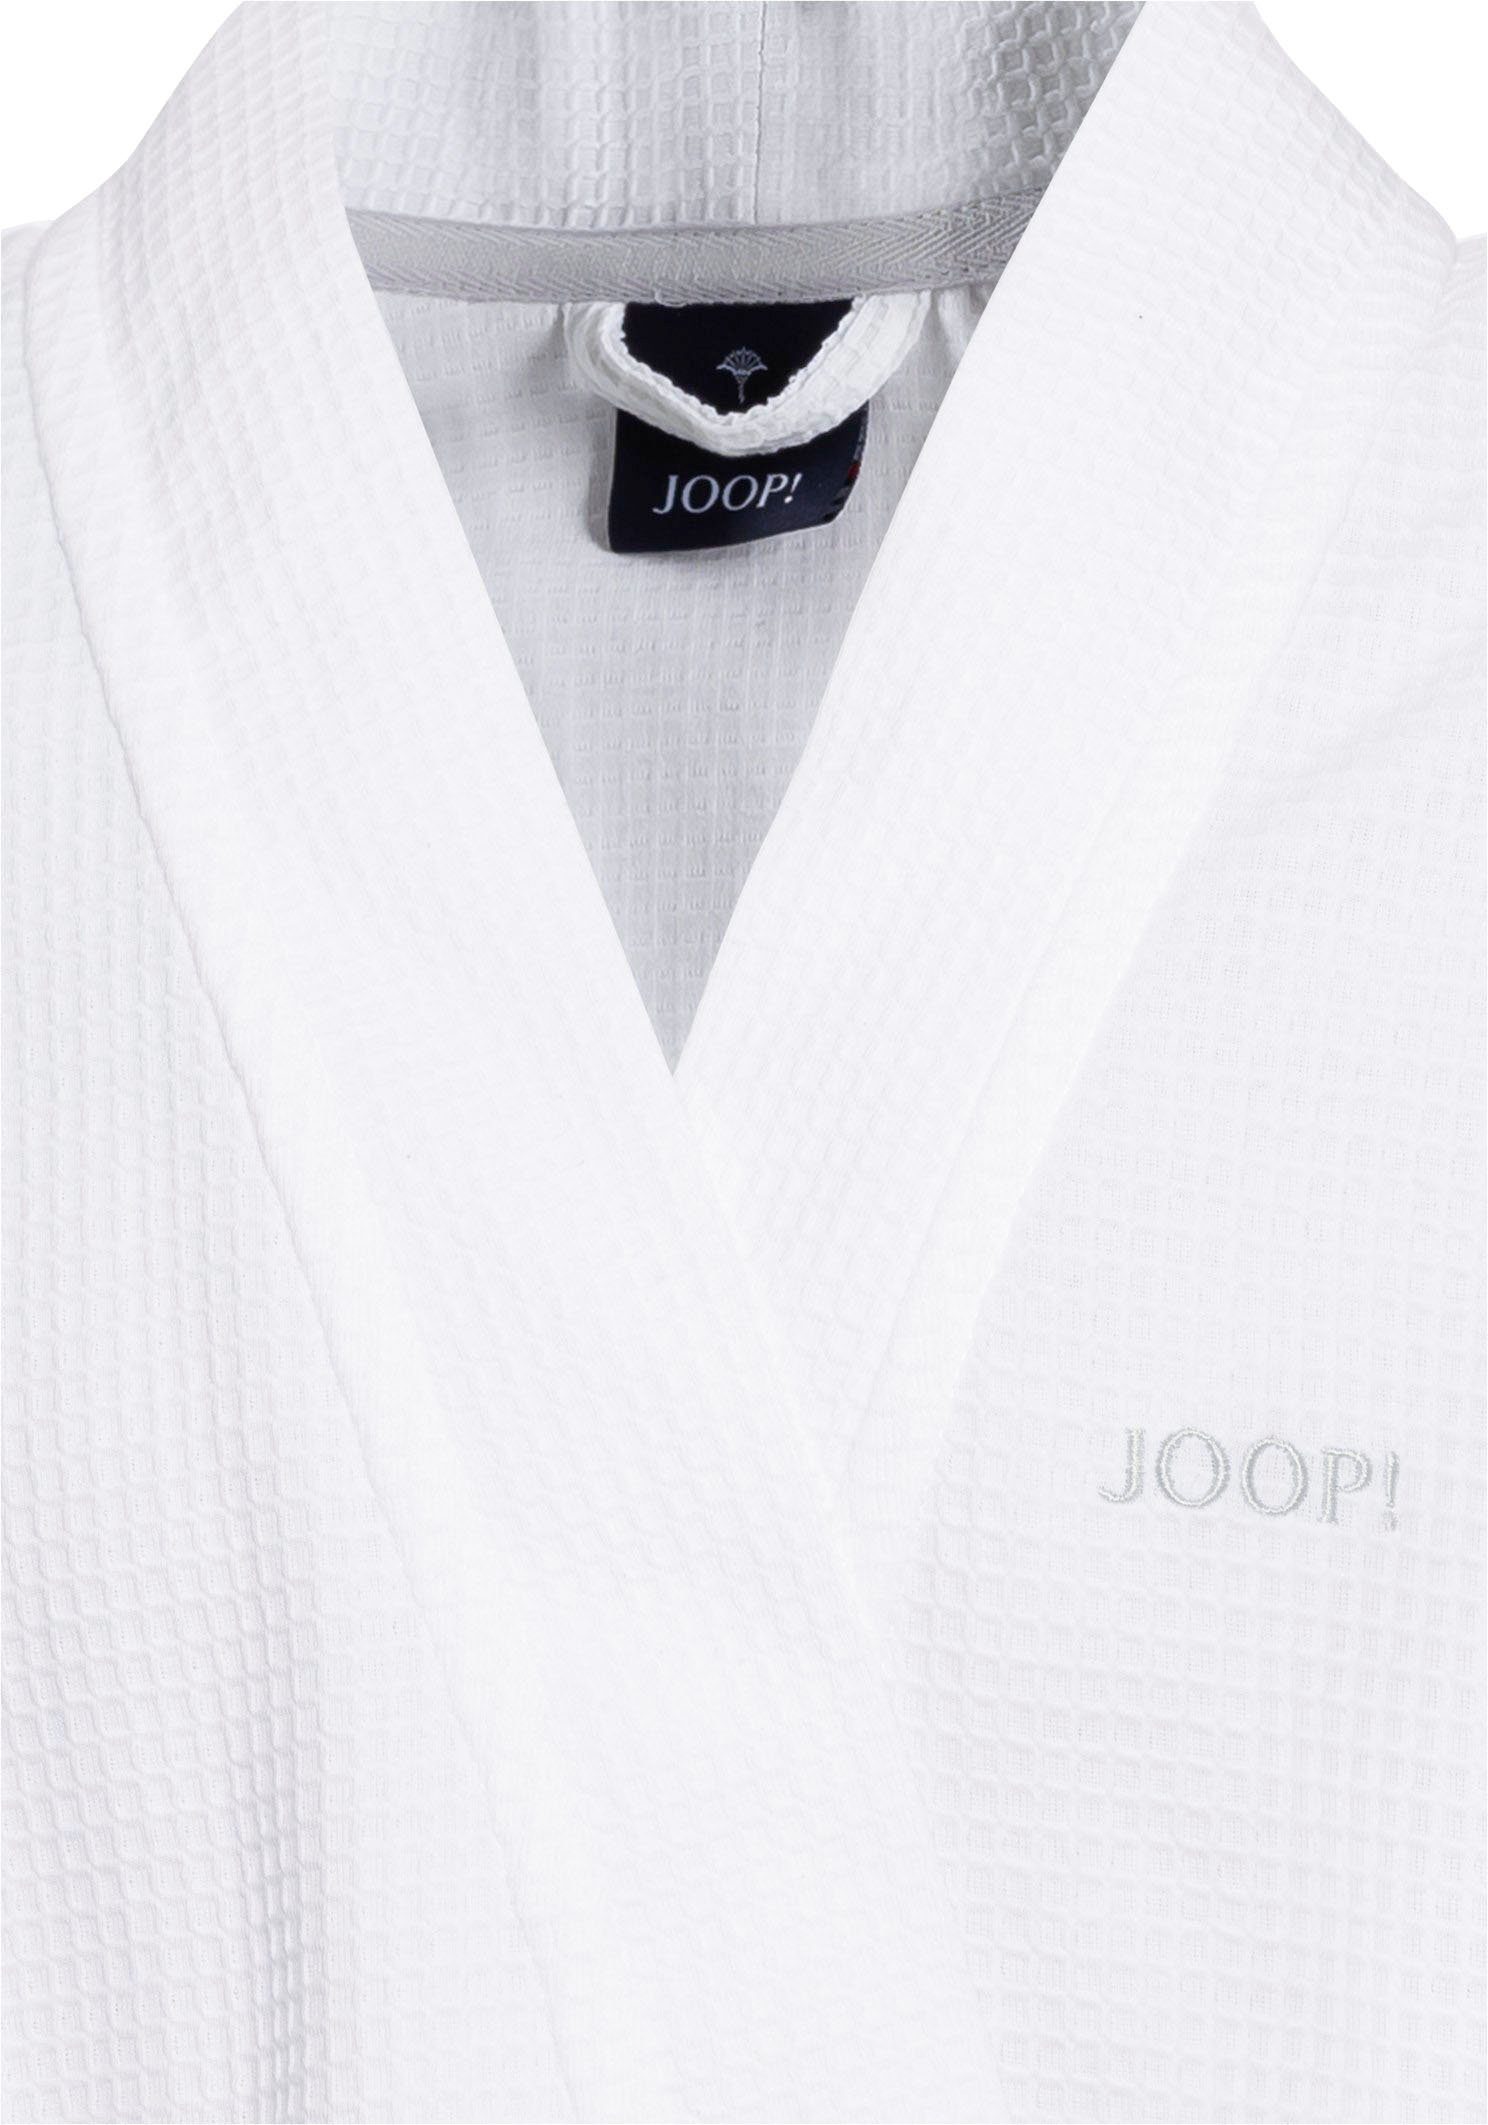 Logo-Stick Gürtel, Herrenbademantel Kimono-Kragen, mit UNI-PIQUÉ, Baumwolle, kontrastigem weiß Kurzform, Joop!